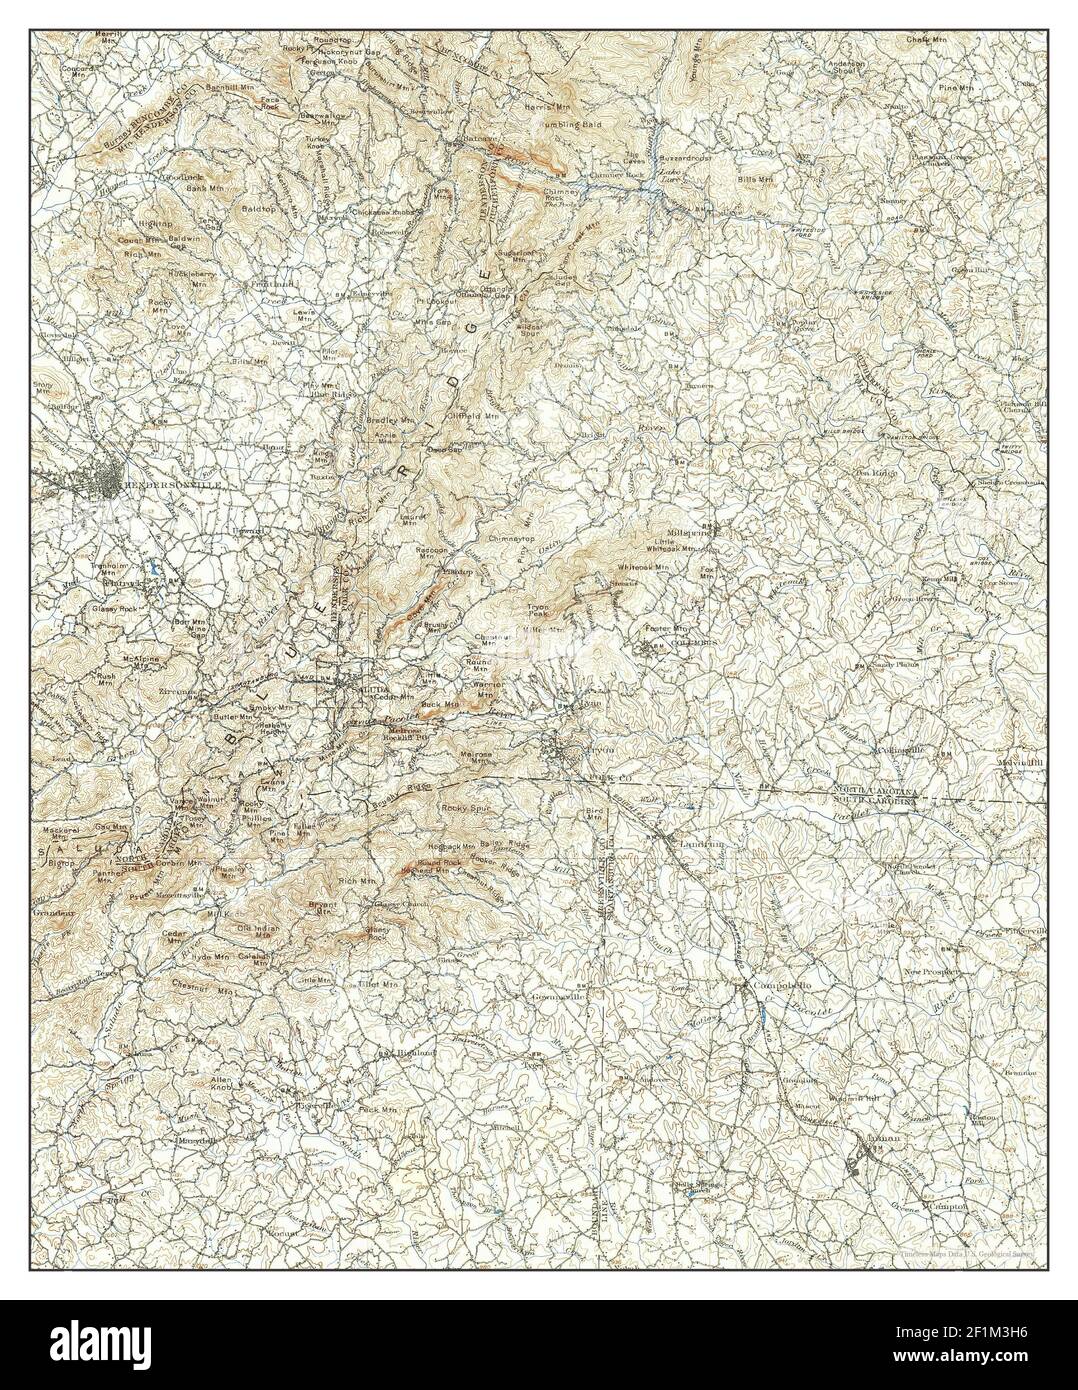 Saluda, North Carolina, Karte 1907, 1:125000, Vereinigte Staaten von Amerika von Timeless Maps, Daten U.S. Geological Survey Stockfoto